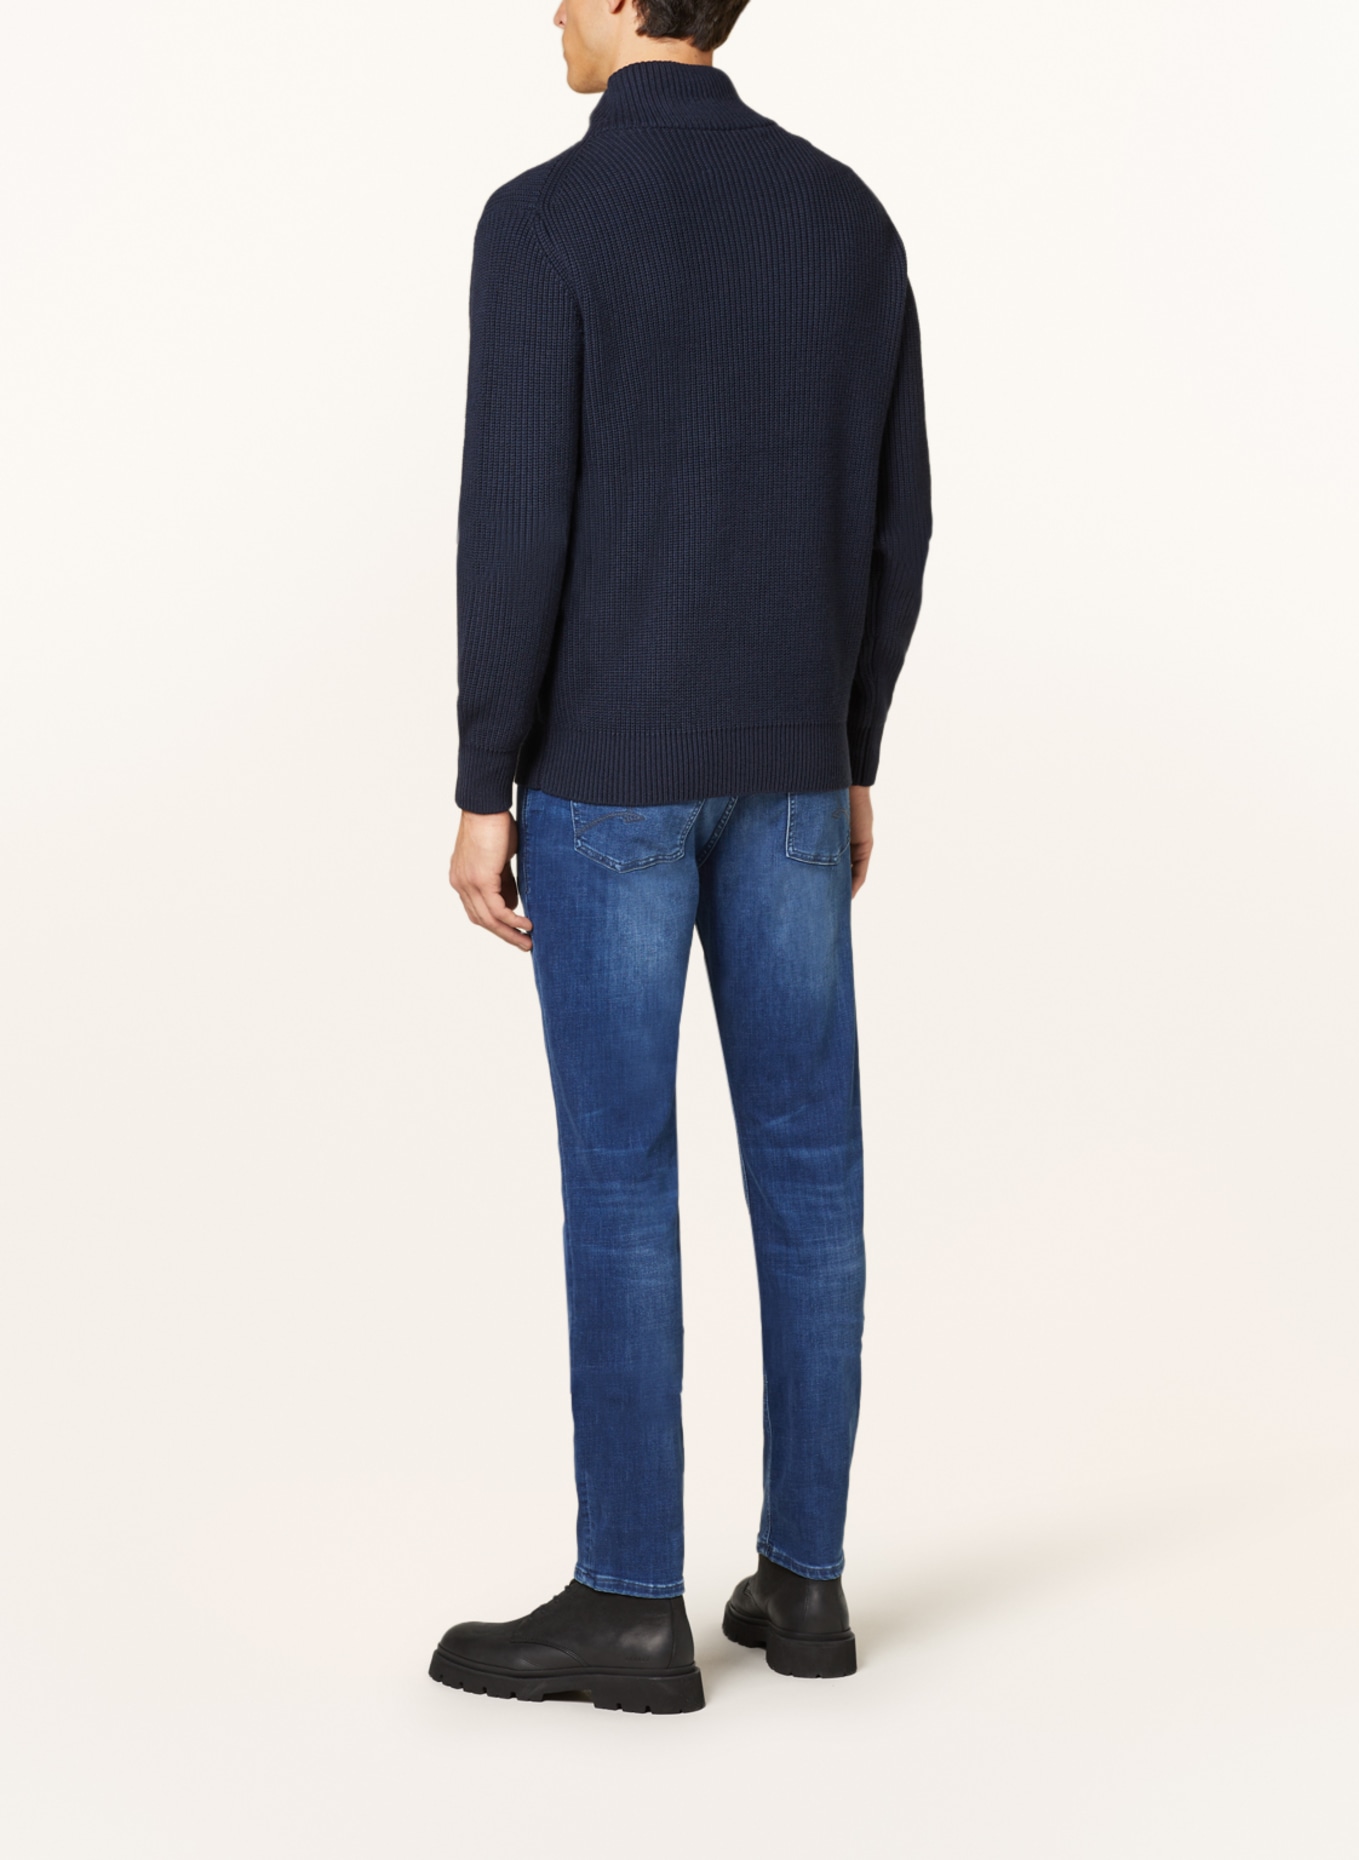 BALDESSARINI Jeans regular fit, Color: 6825 blue used whisker (Image 3)